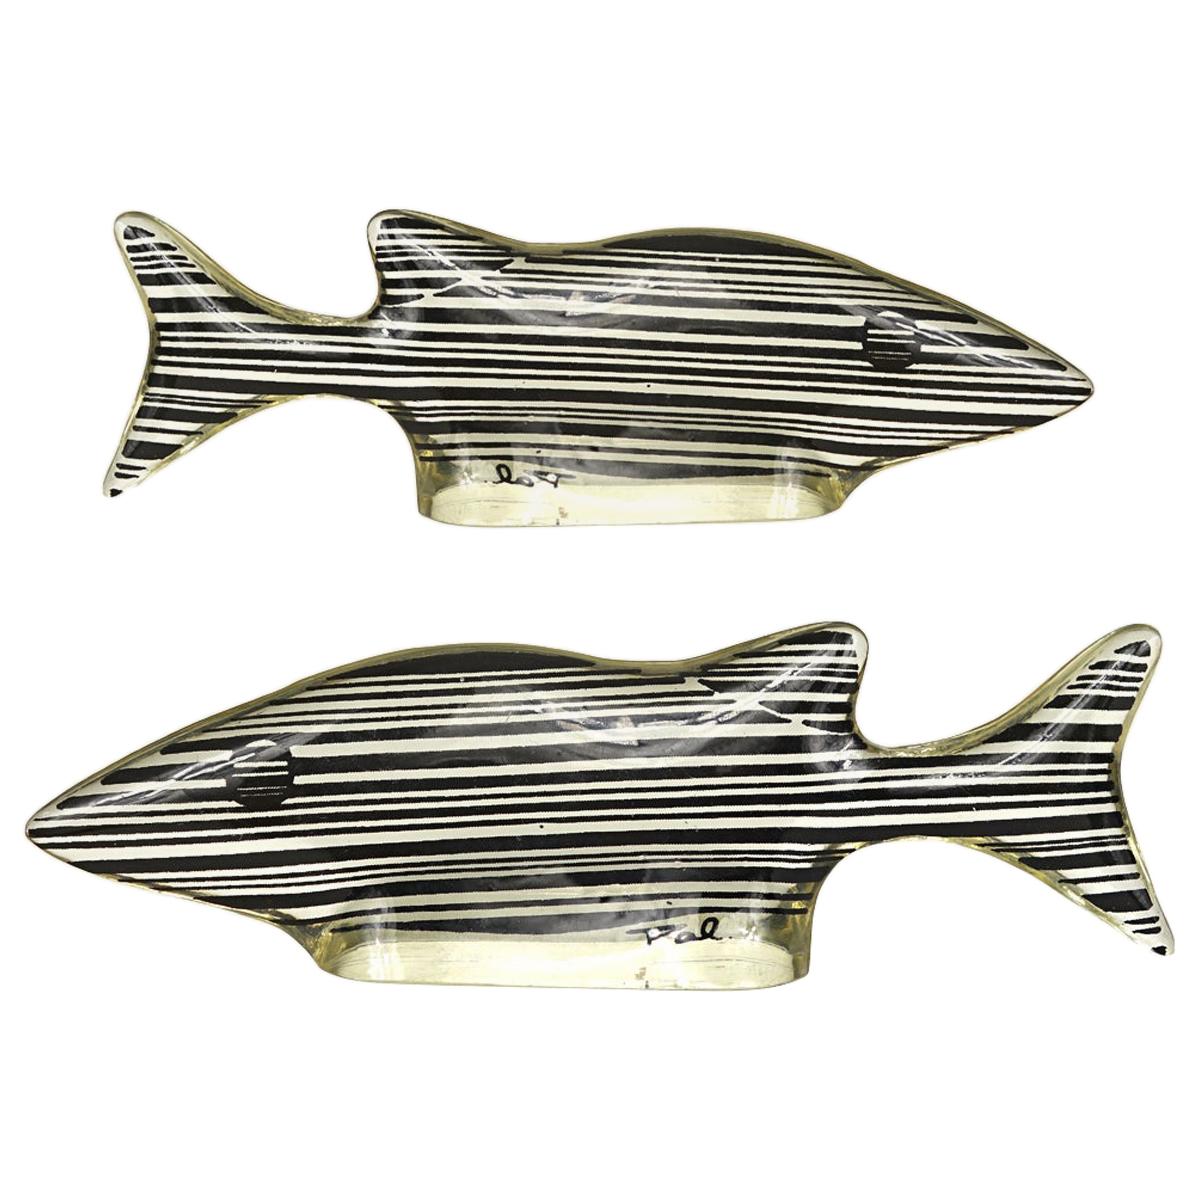 Paire de petits poissons en lucite de style moderne du milieu du siècle dernier, fabriqués par Abraham Palatnik